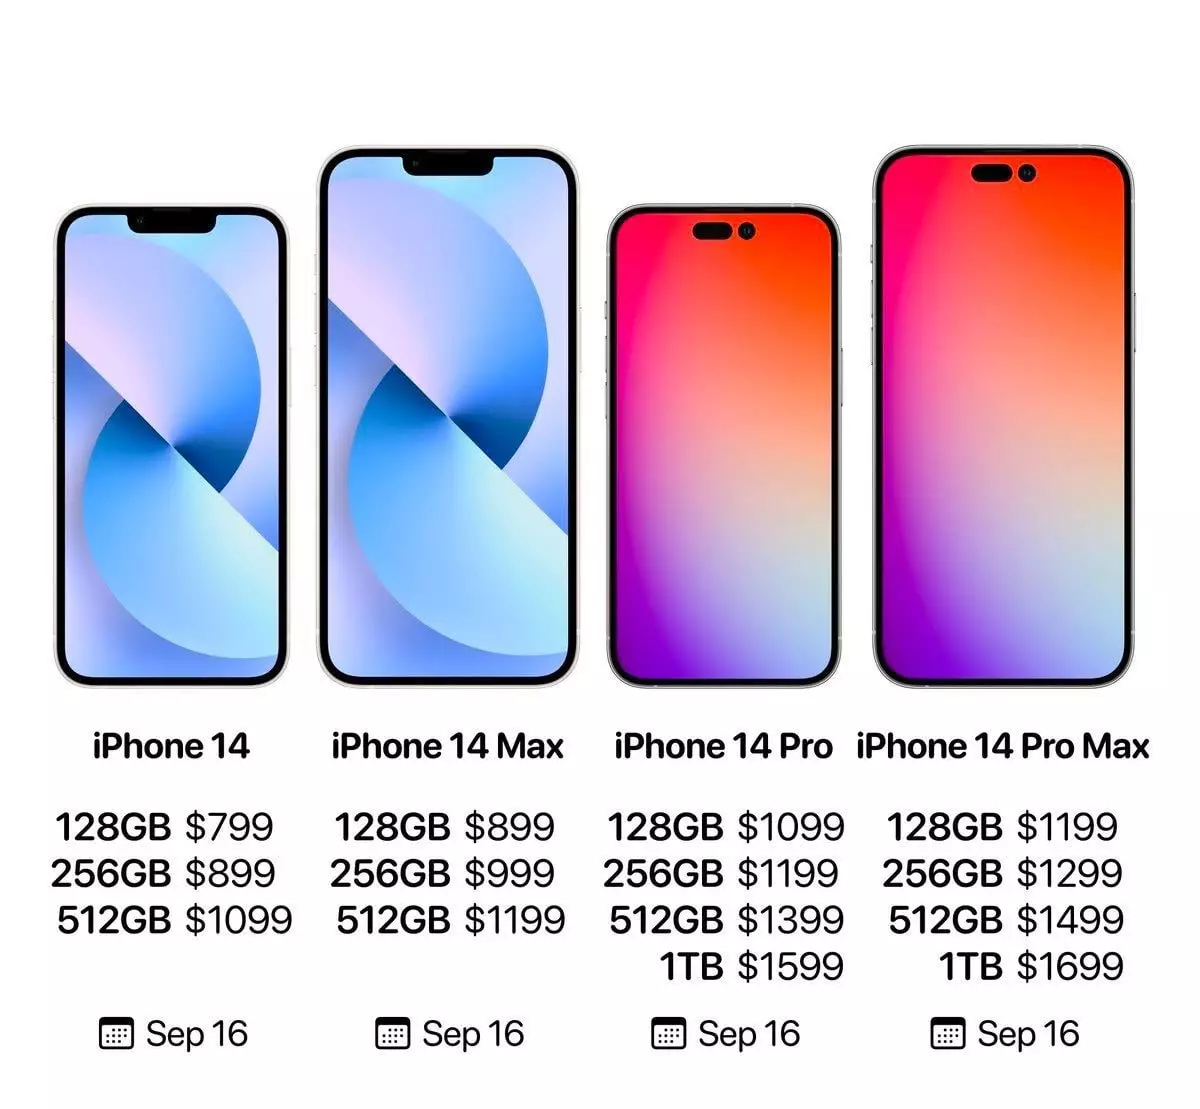 цена на iPhone 14 и iPhone 14 Pro Max